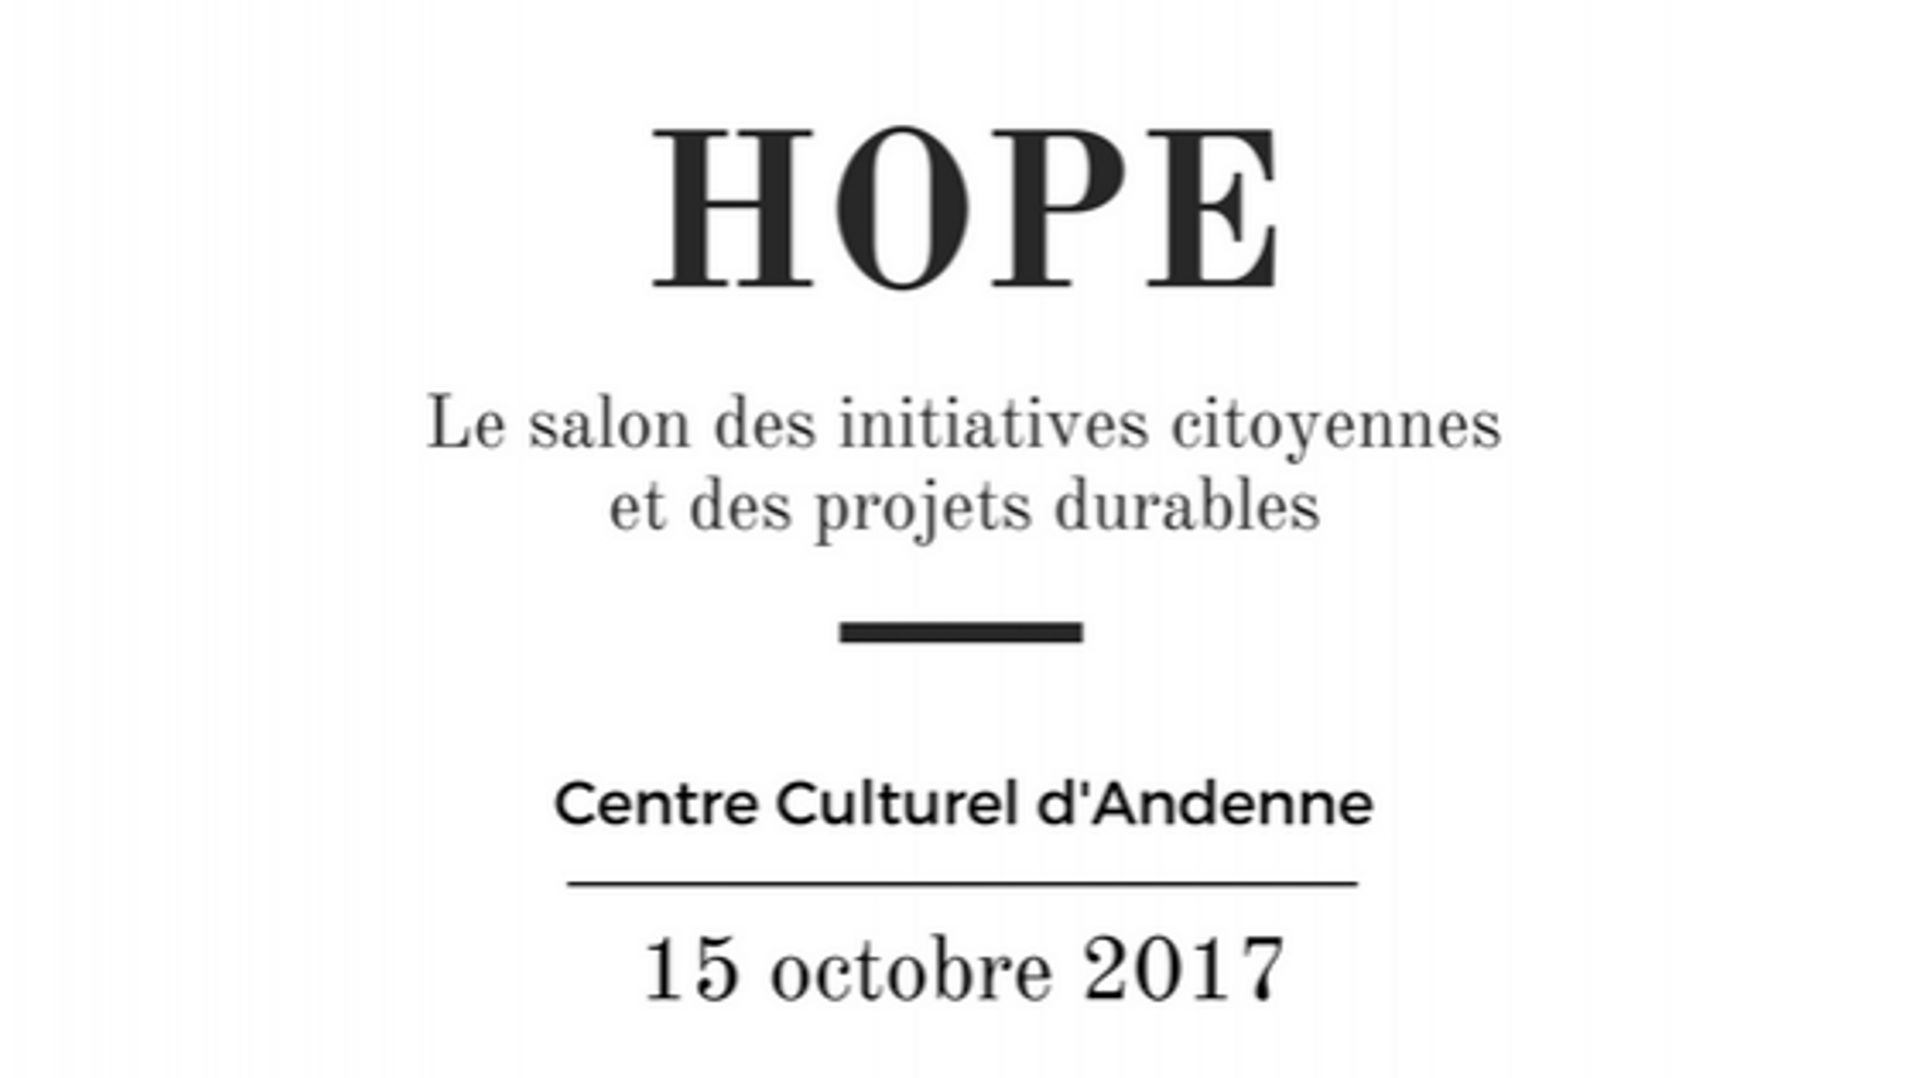 Hope, le salon des initiatives citoyennes et des projets durables à Andenne 